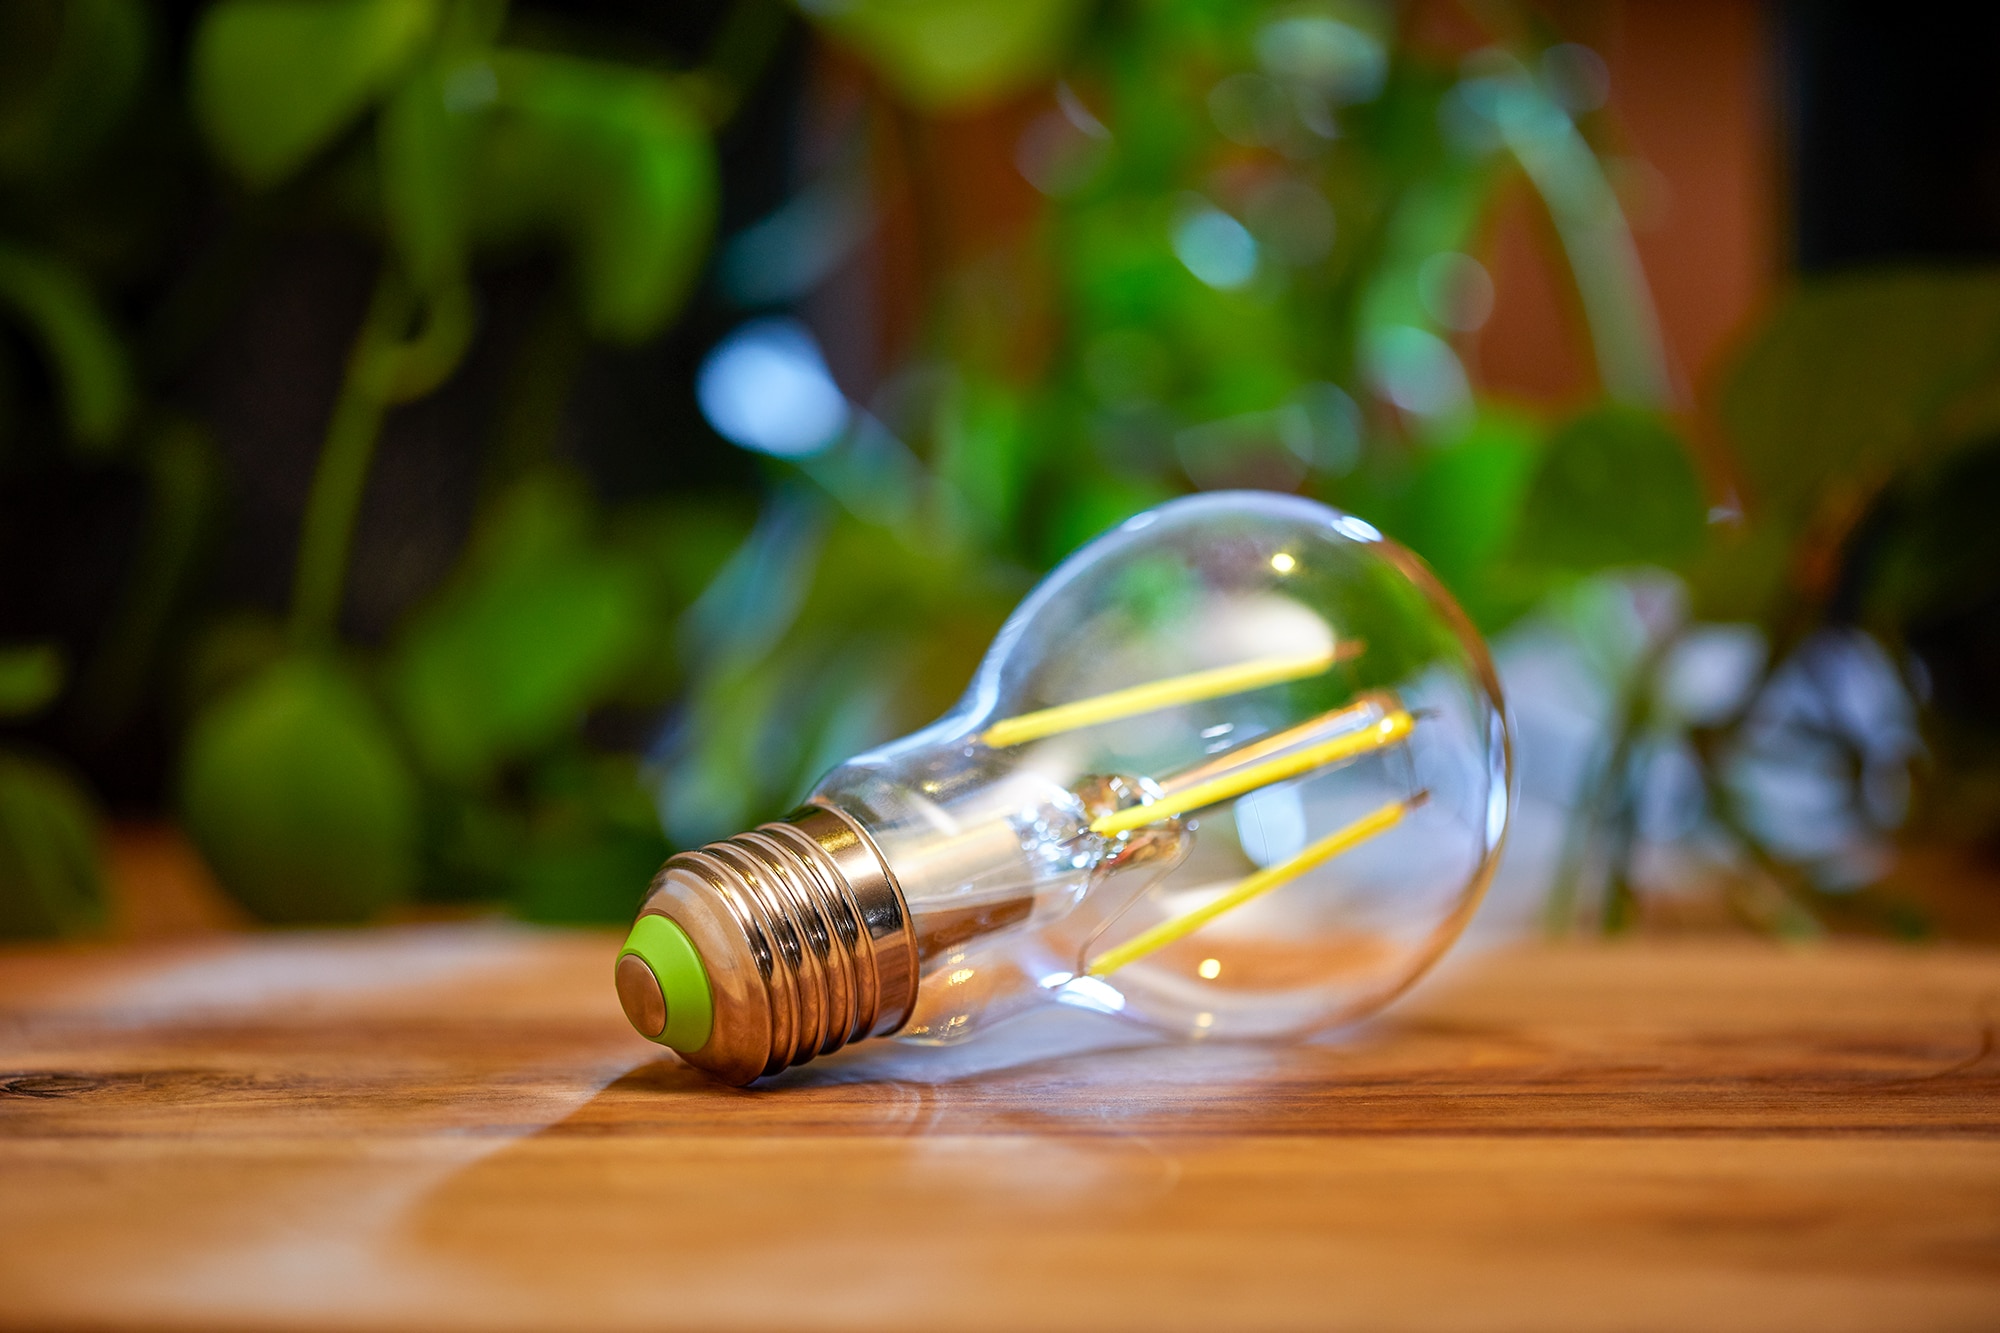 Stressvol Dom staan De meest energiezuinige Philips LED A-klasse lampen | Signify  Bedrijfswebsite